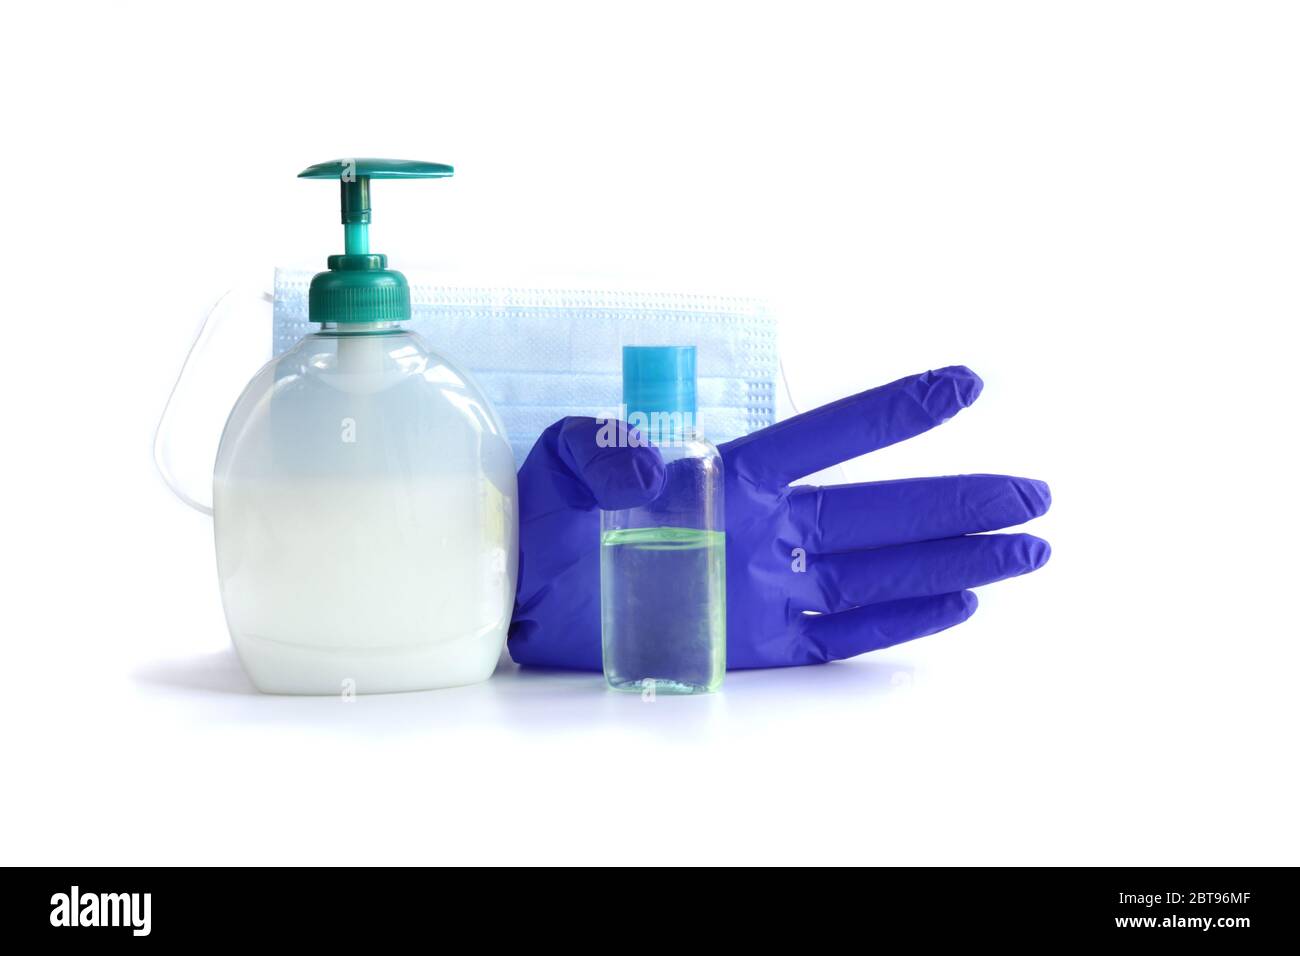 COVID-19 Corona Virenschutz. Bilder von Hand Desinfektionsmittel, Handschuh, Maske, Seifenspender gegen 2019 nCoV zu schützen, helfen, die Ausbreitung des Virus zu stoppen. Schützen Sie sich selbst und andere Stockfoto